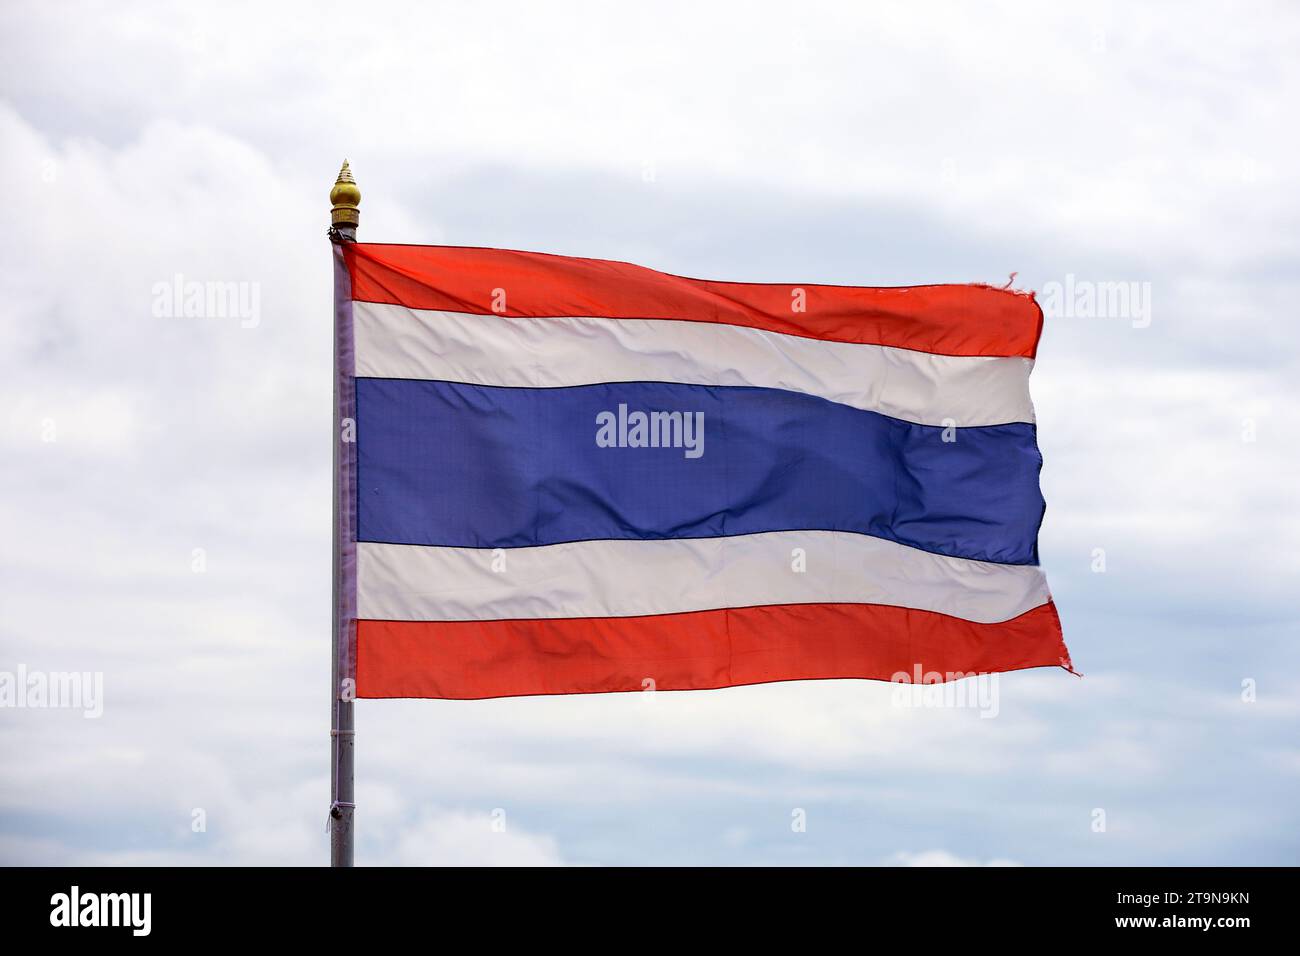 Le drapeau national du Royaume de Thaïlande agite contre le ciel avec des nuages Banque D'Images